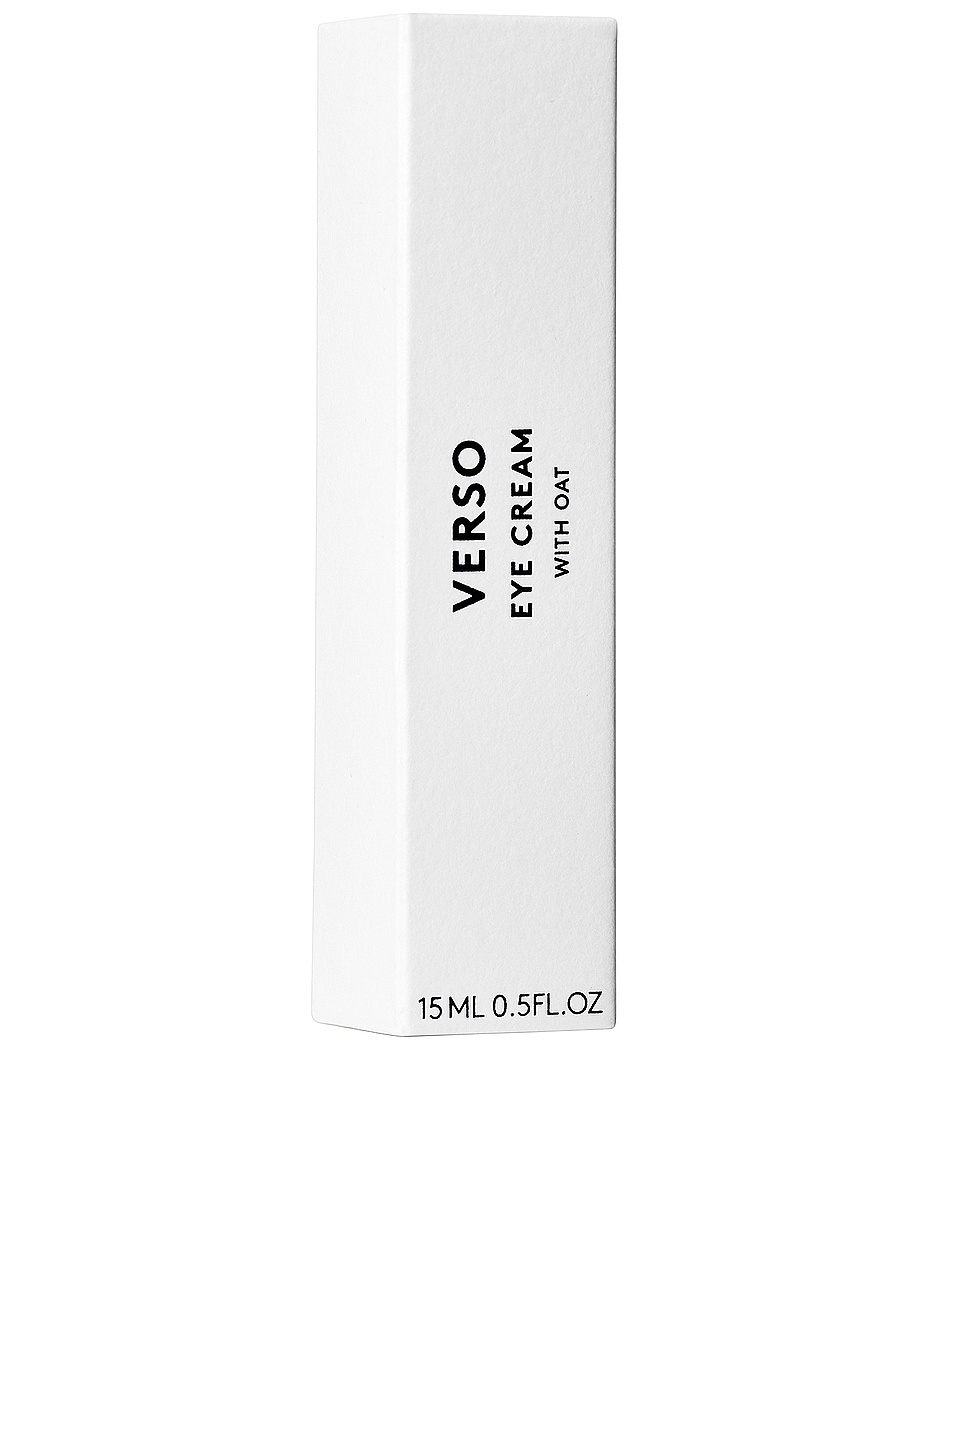 Shop Verso Skincare Super Eye Cream In N,a